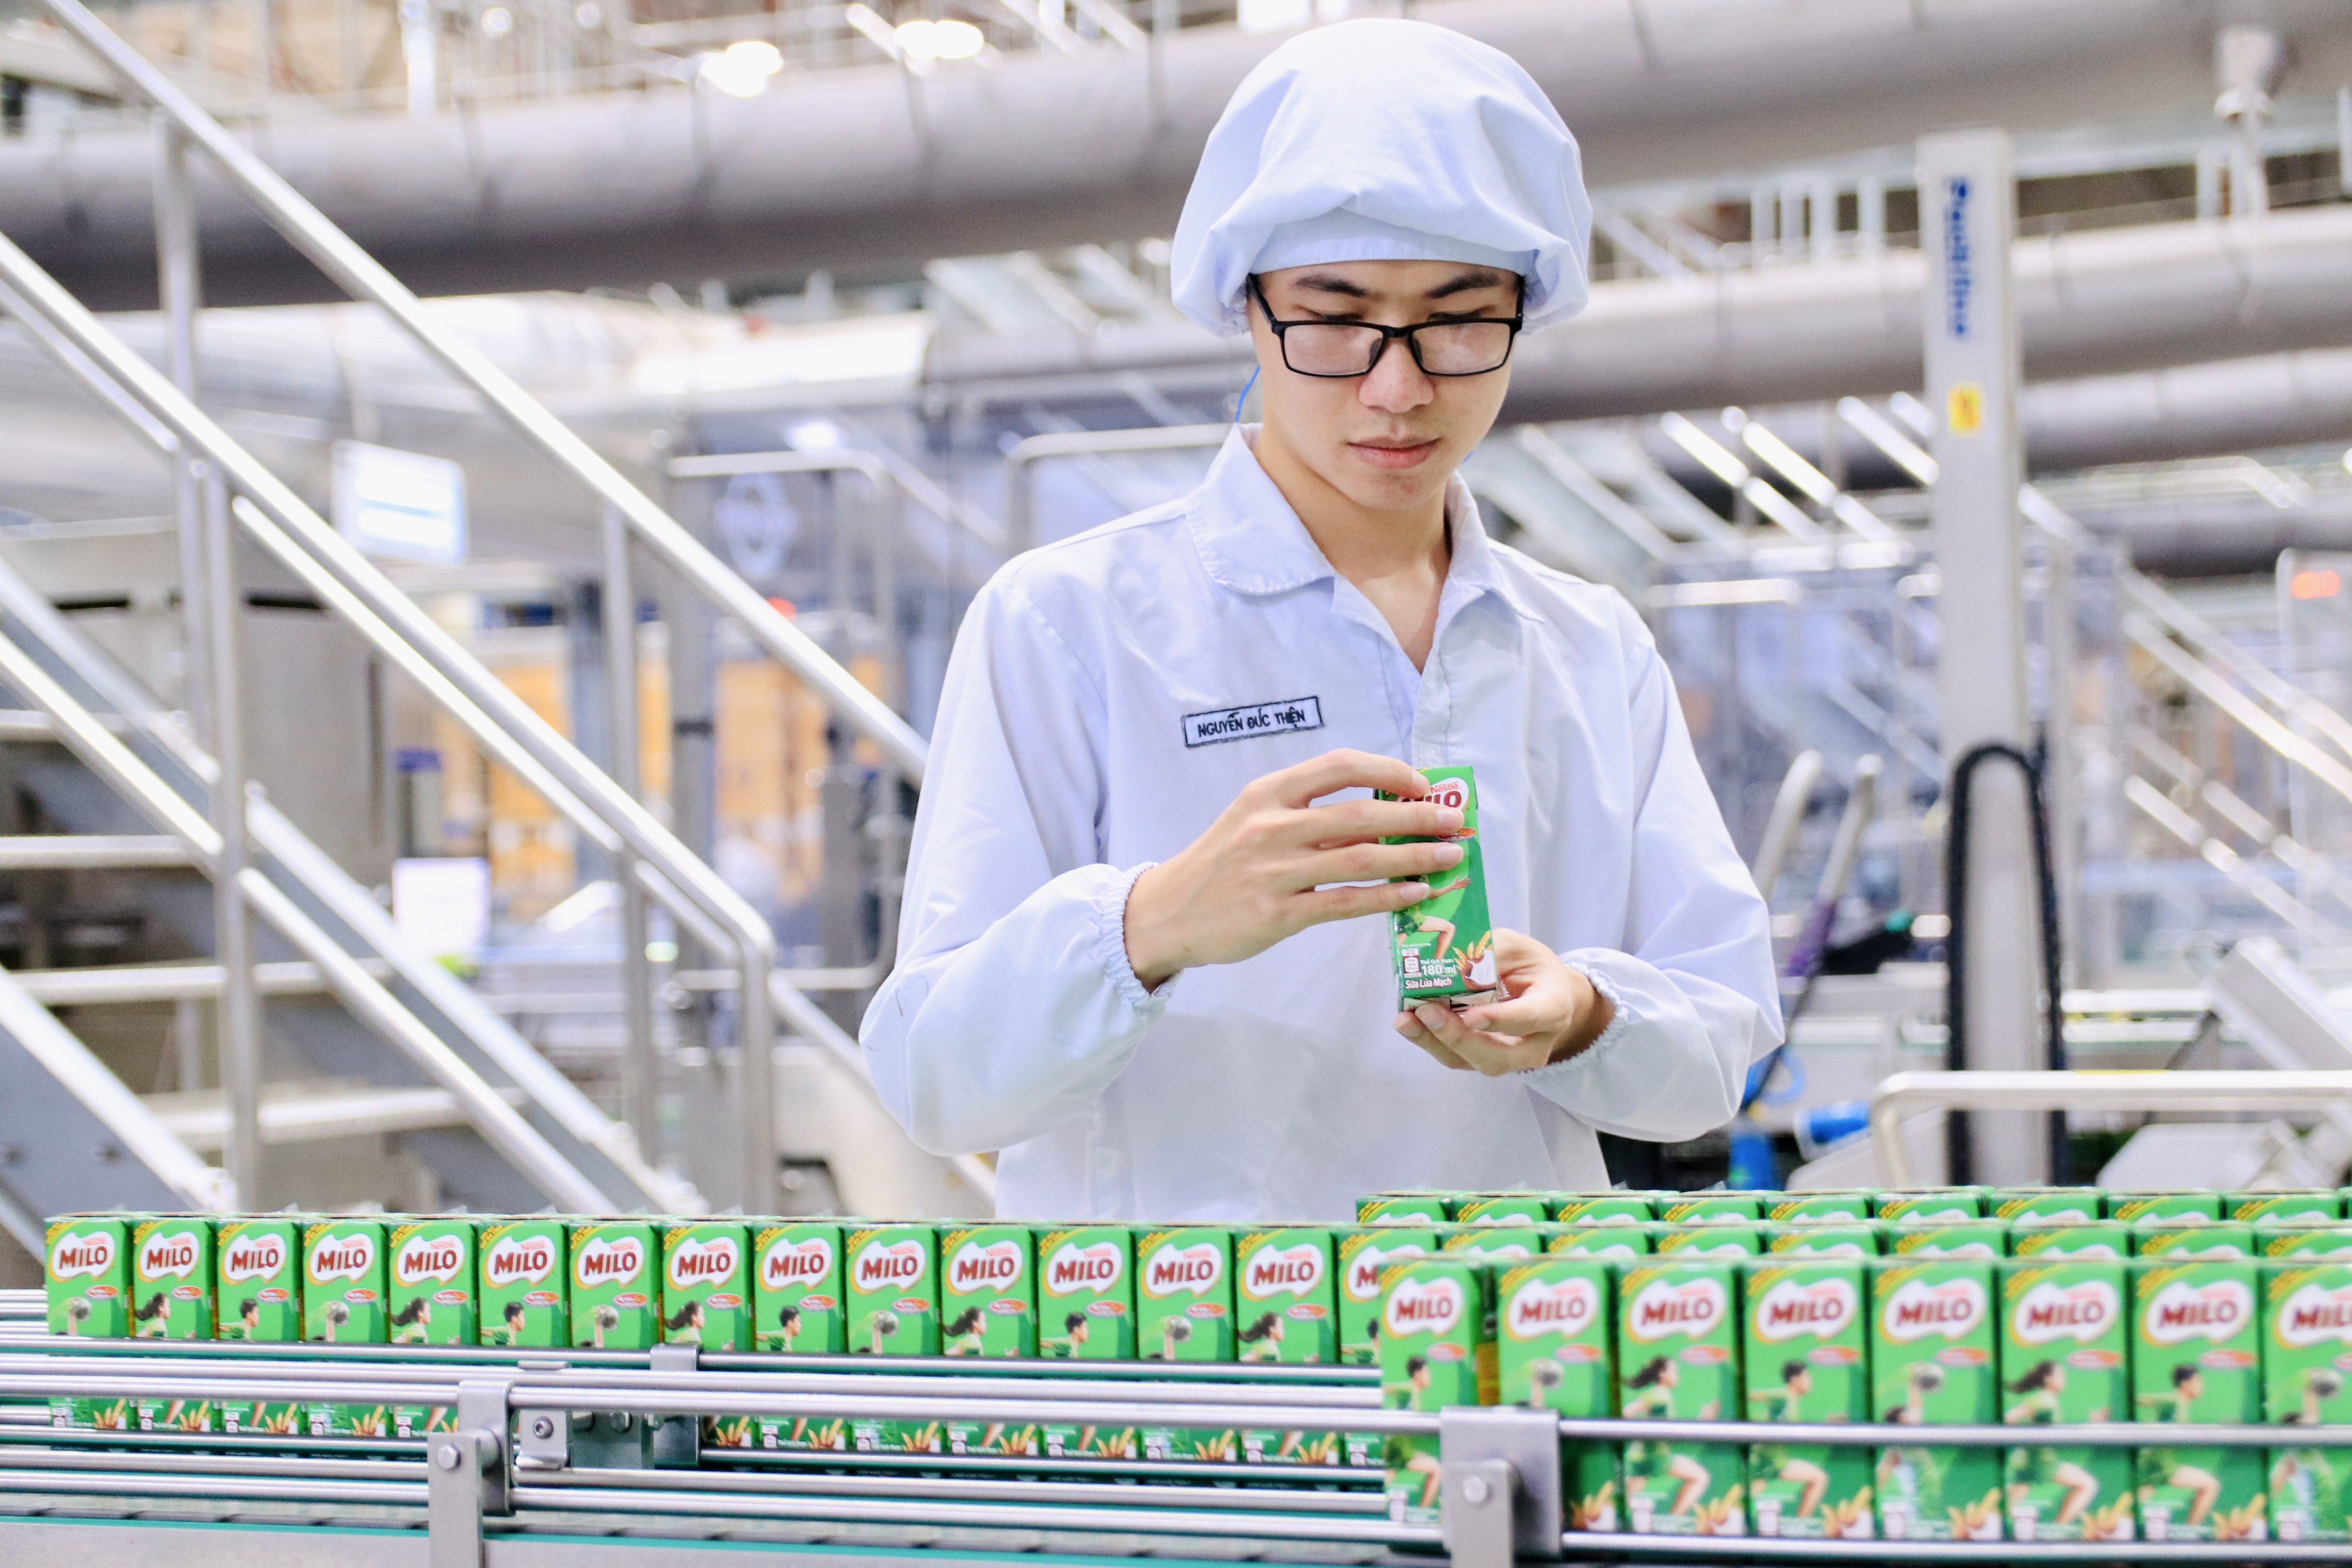 Tài chính - Doanh nghiệp - Nestlé Việt Nam khẳng định chuyển đổi số là động lực tăng trưởng và phát triển bền vững (Hình 3).